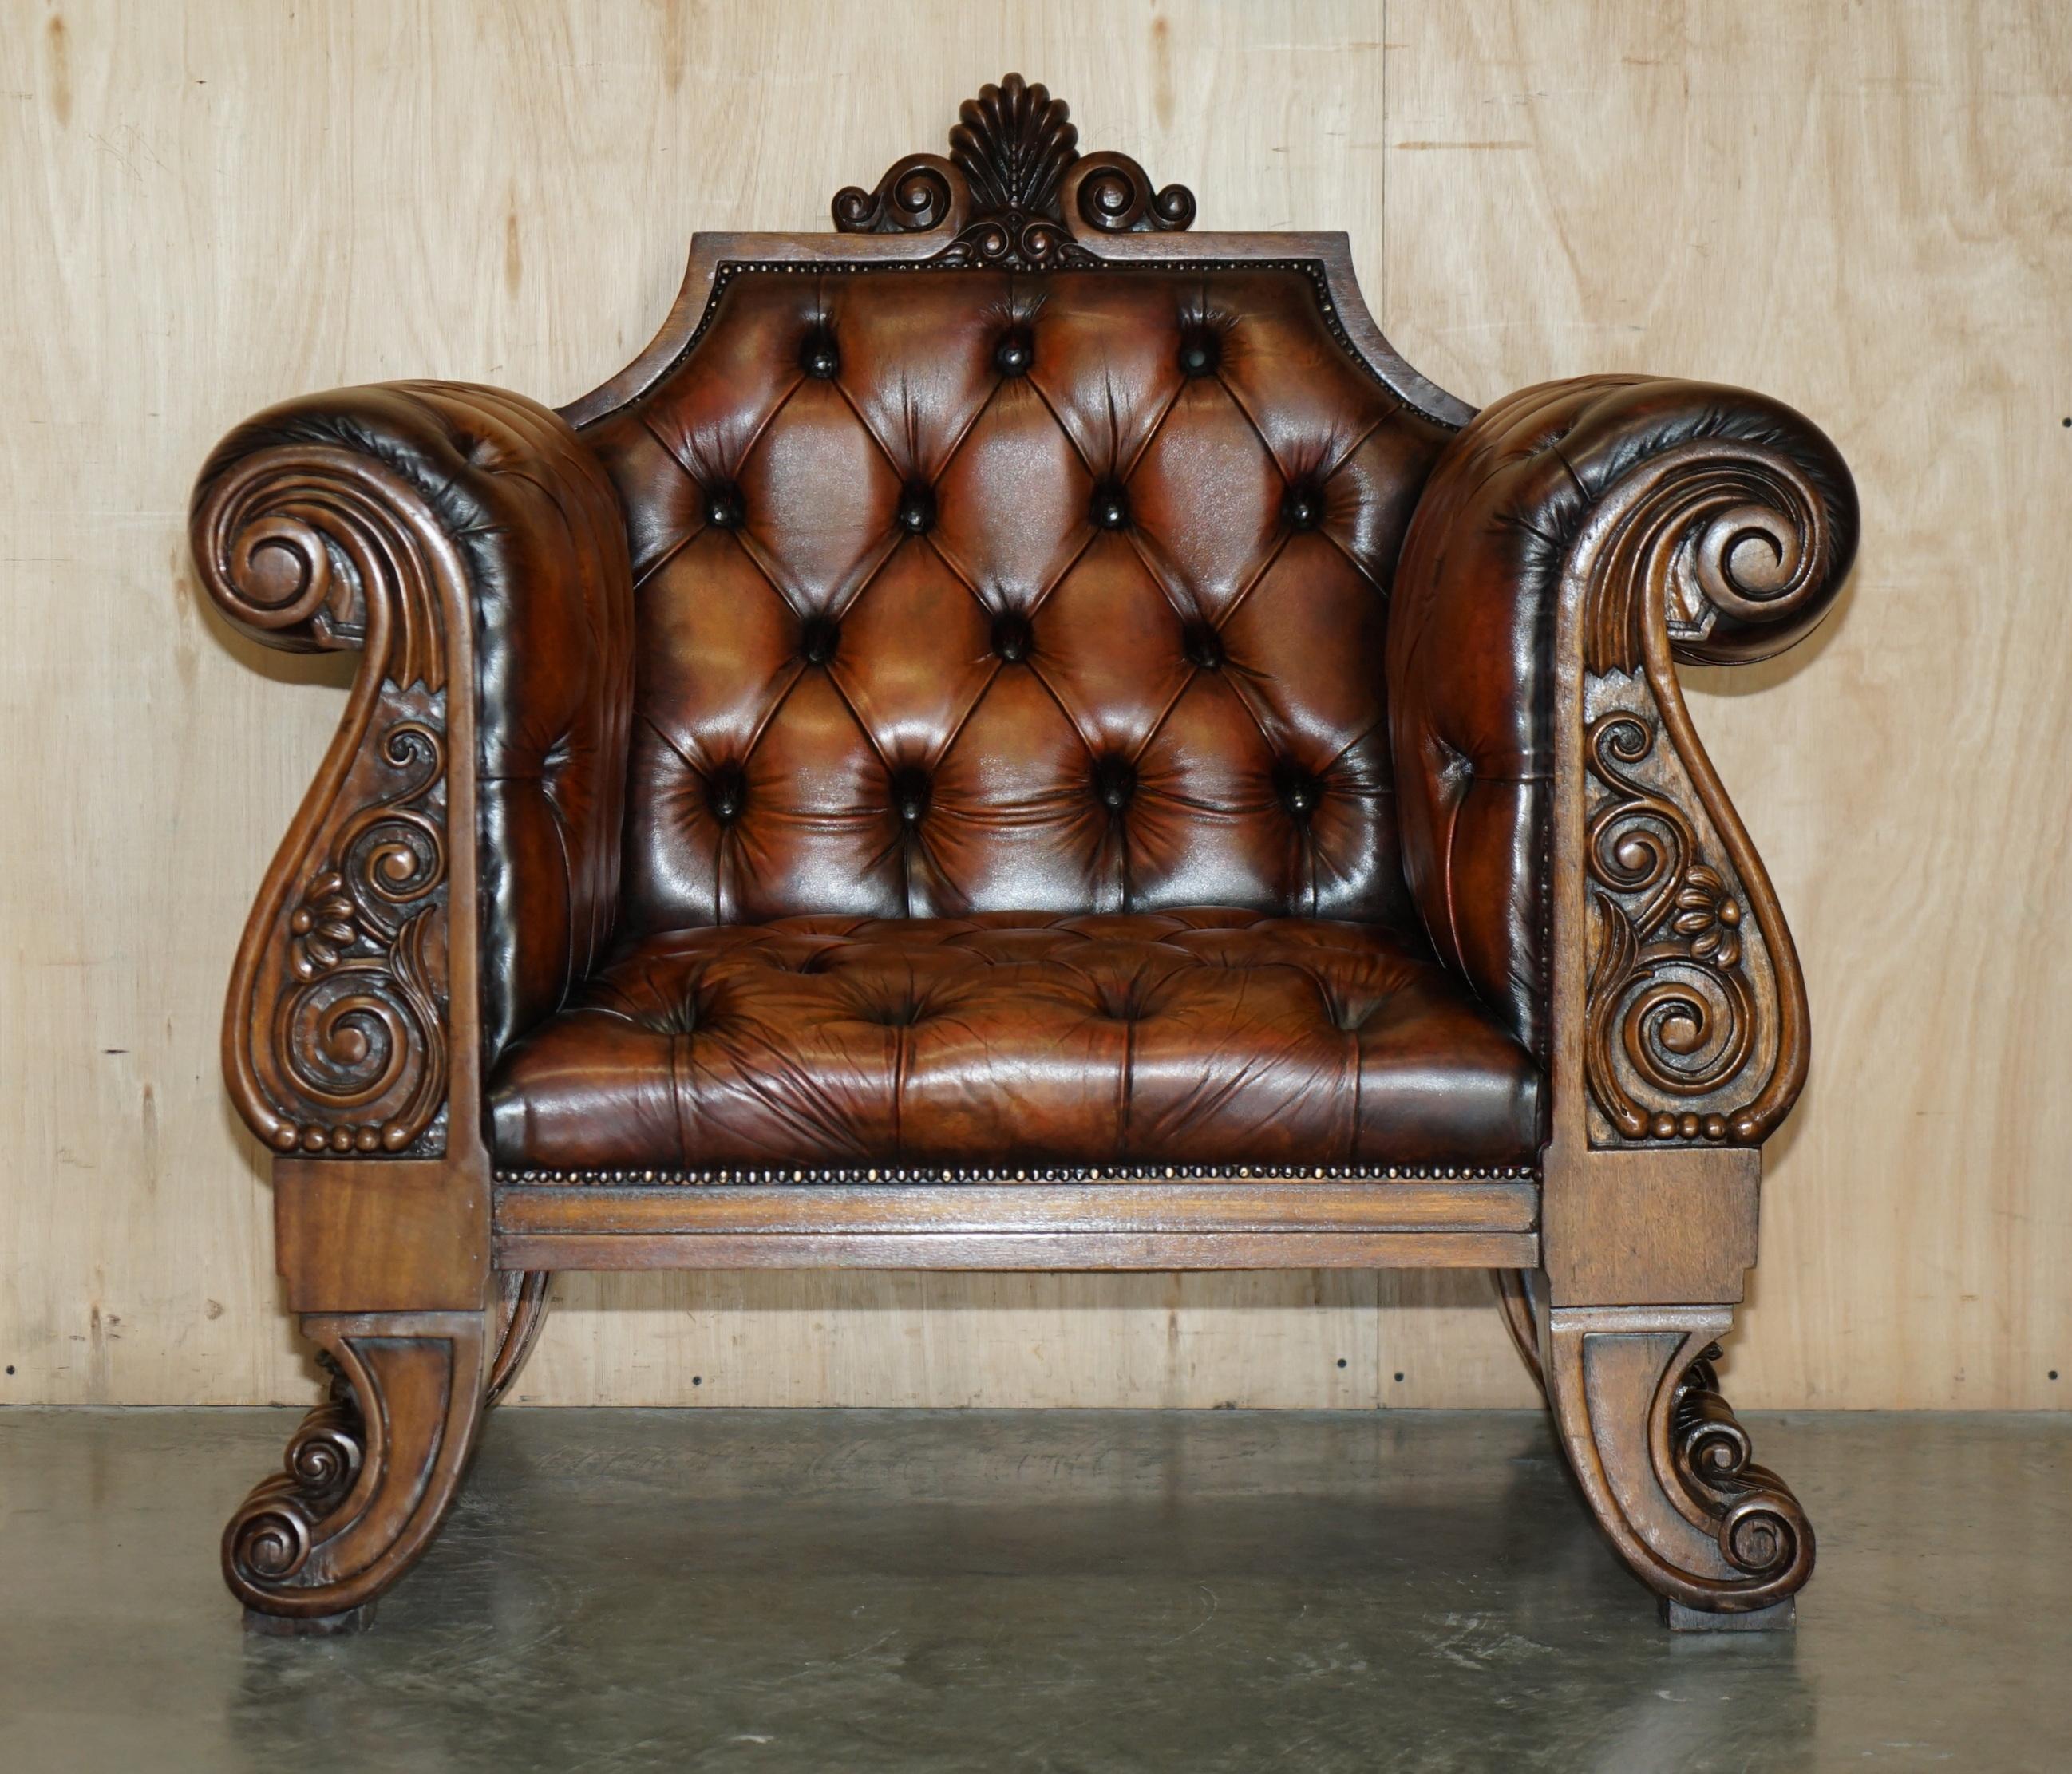 Royal House Antiques

Royal House Antiques freut sich, diesen außergewöhnlich seltenen, auf Bestellung angefertigten, vollständig restaurierten, um 1900-1920 handgefärbten Chesterfield-Sessel aus zigarrenbraunem Leder zum Verkauf anzubieten. 

Bitte